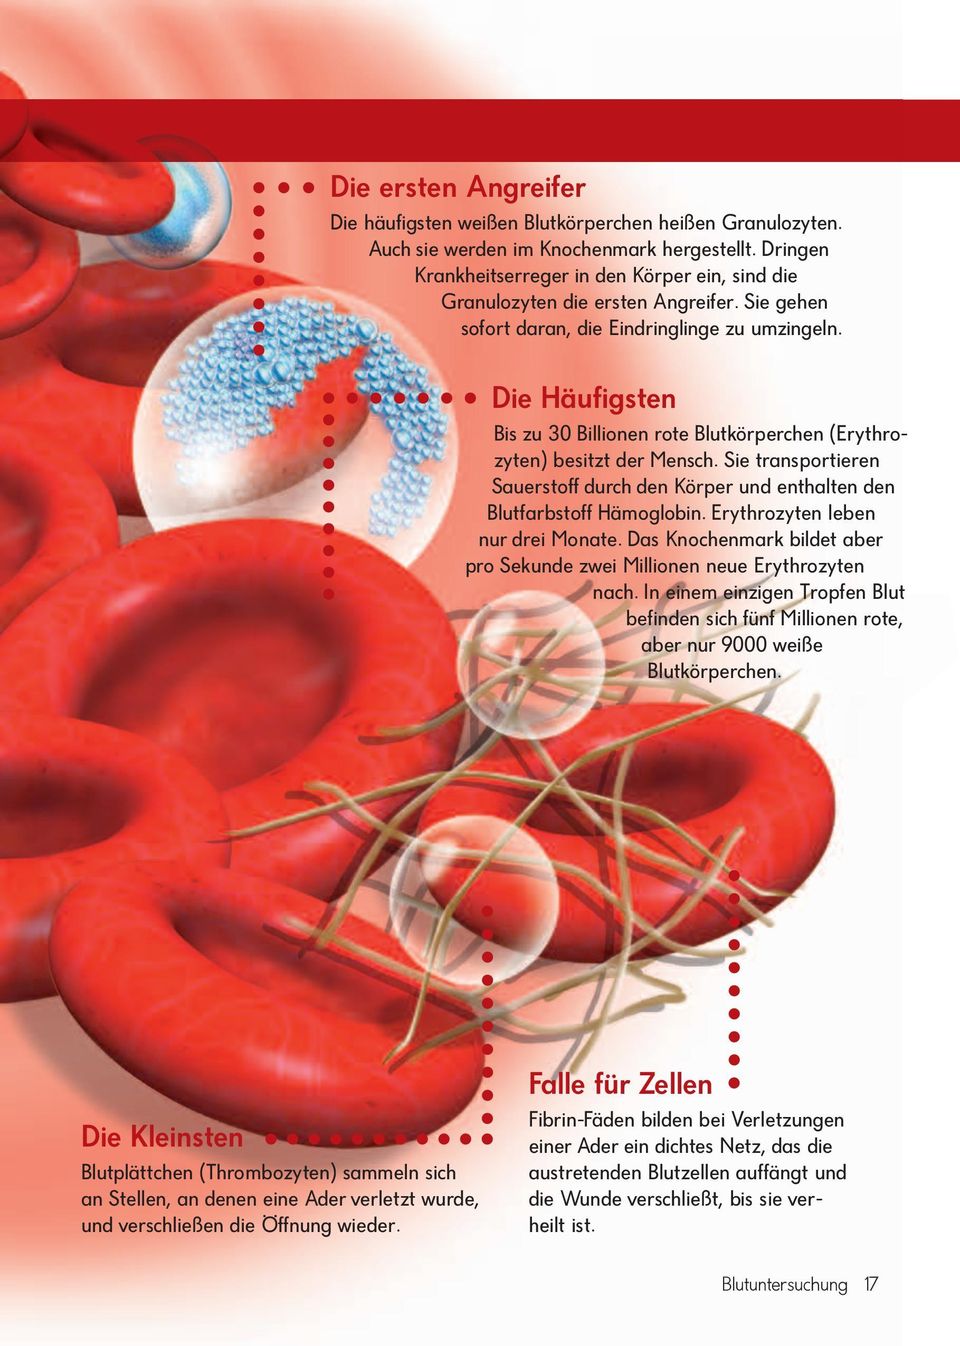 Die Hä u fig sten Bis zu 30 Bil lio nen rote Blutkörperchen (Ery throzyten) be sitzt der Mensch. Sie transportieren Sau er stoff durch den Kör per und enthalten den Blutfarbstoff Hämoglobin.